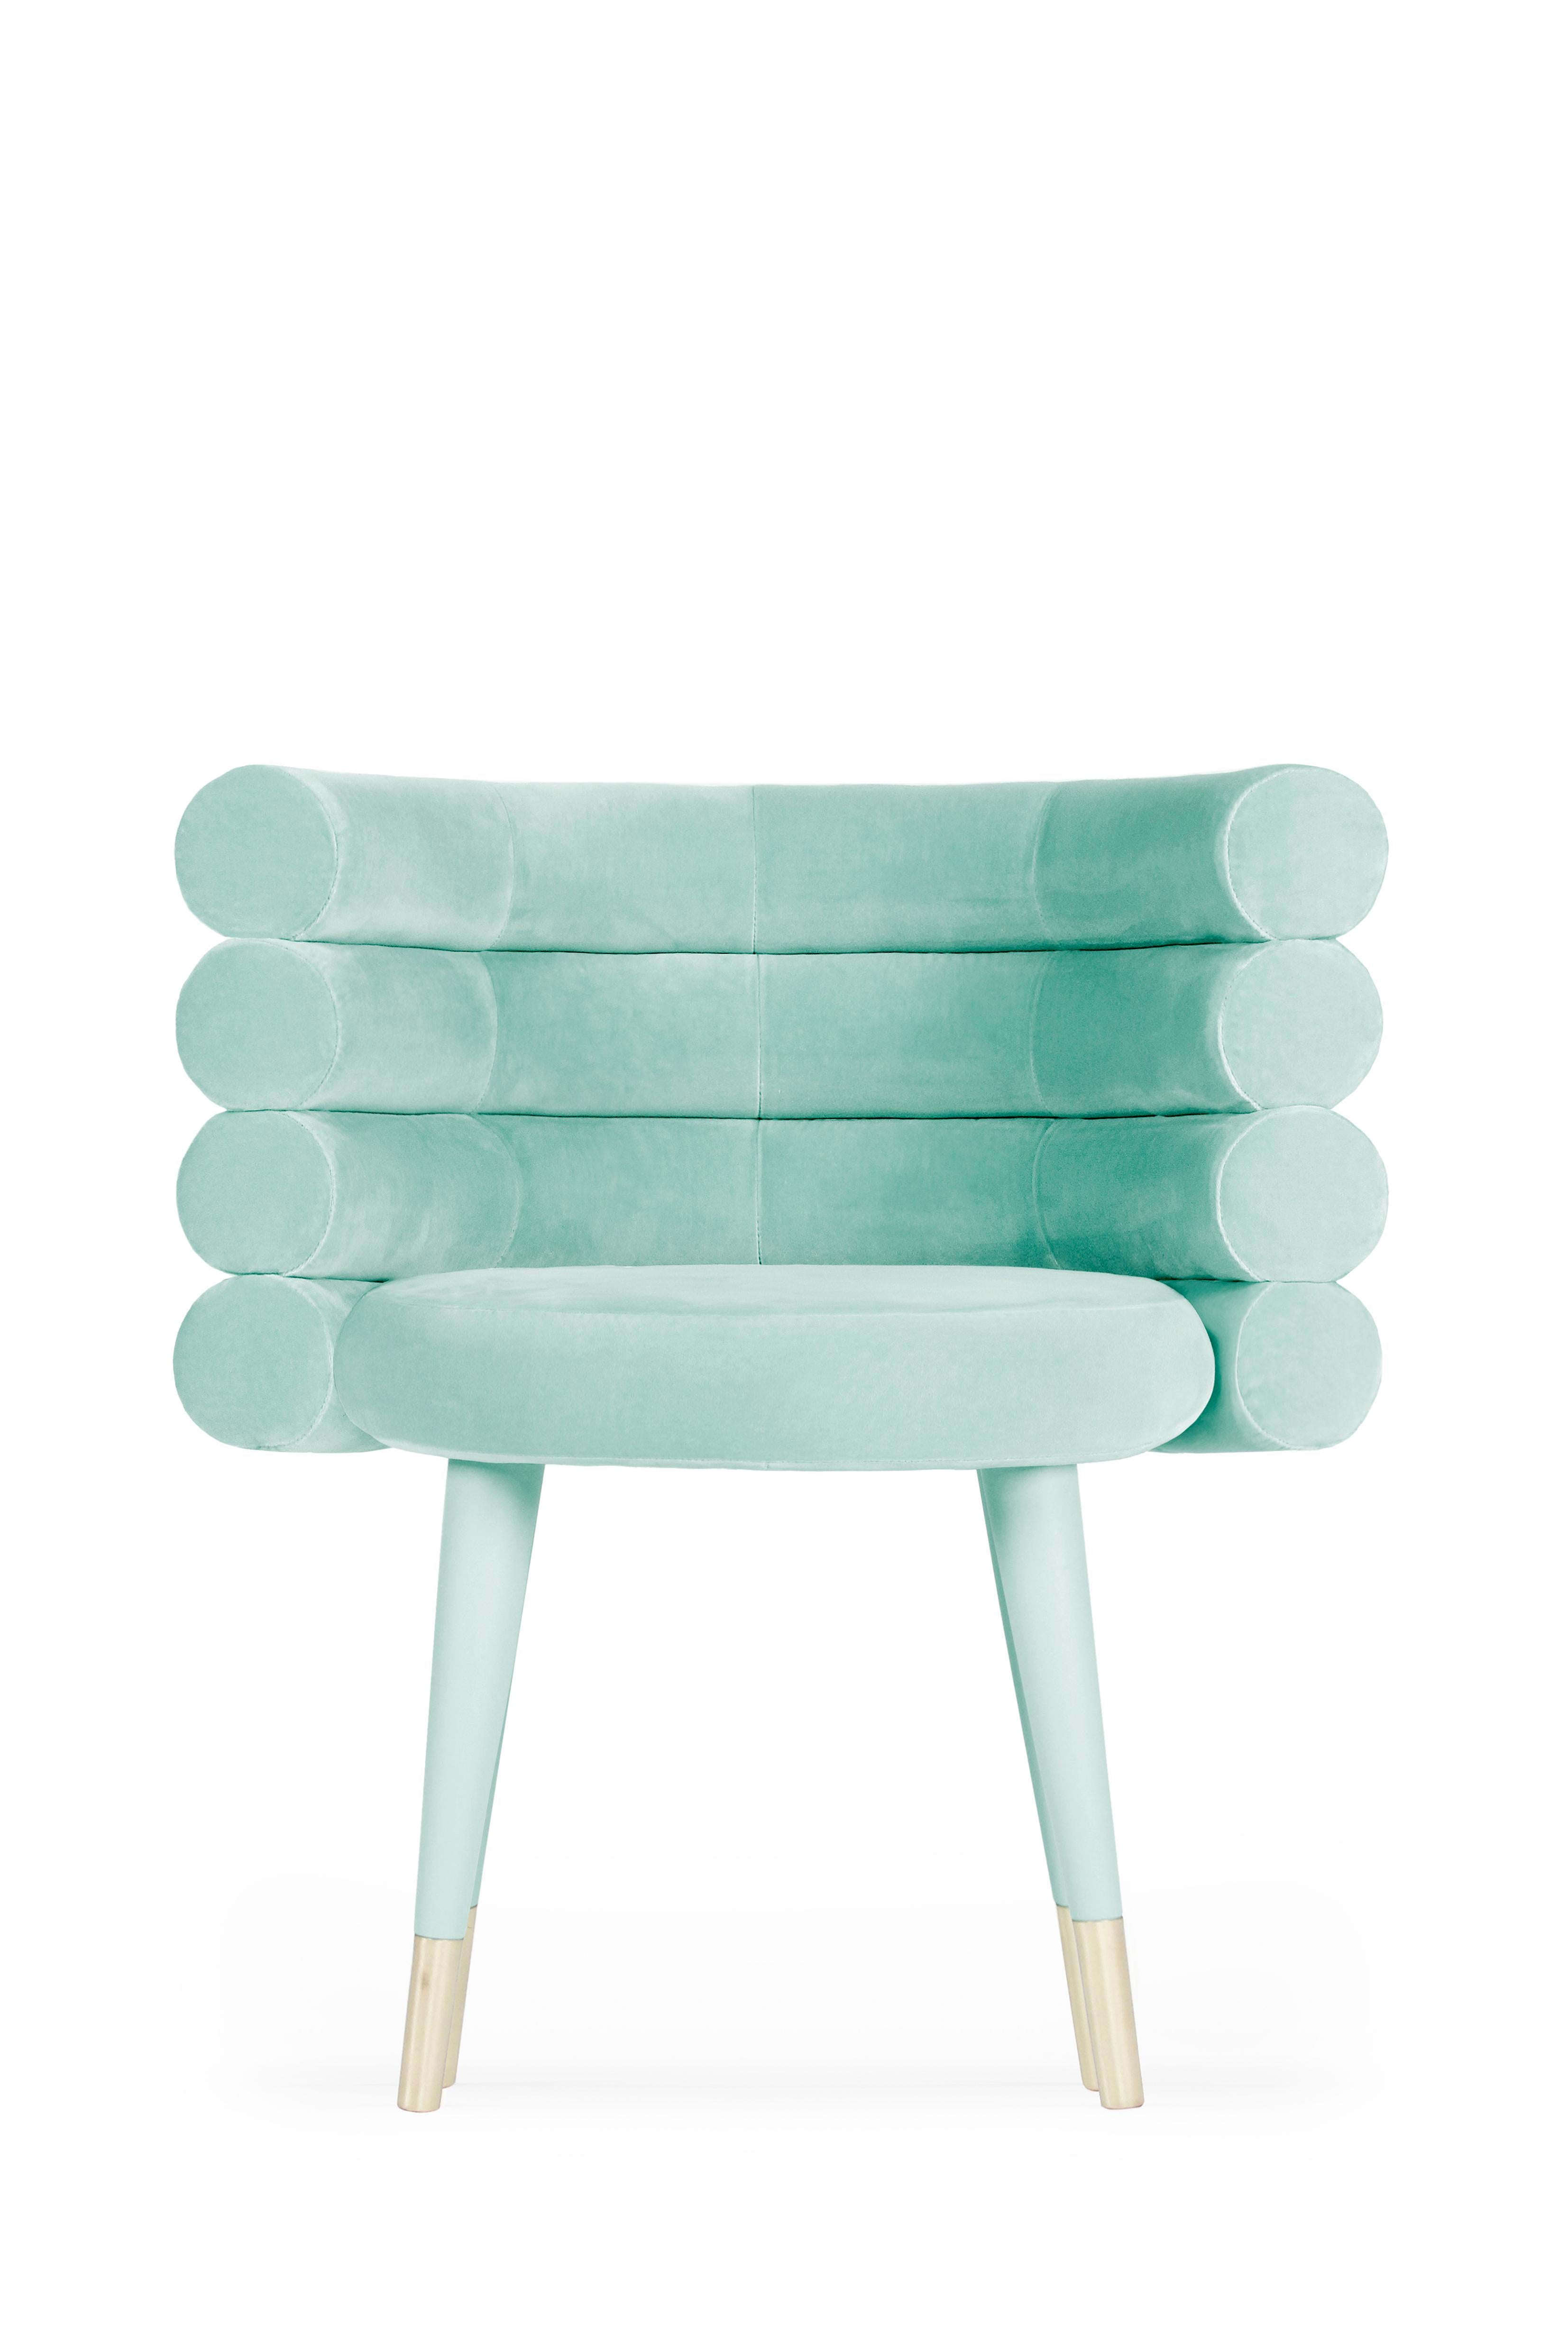 Sky Blue Marshmallow Dining Chair, Royal Stranger 4